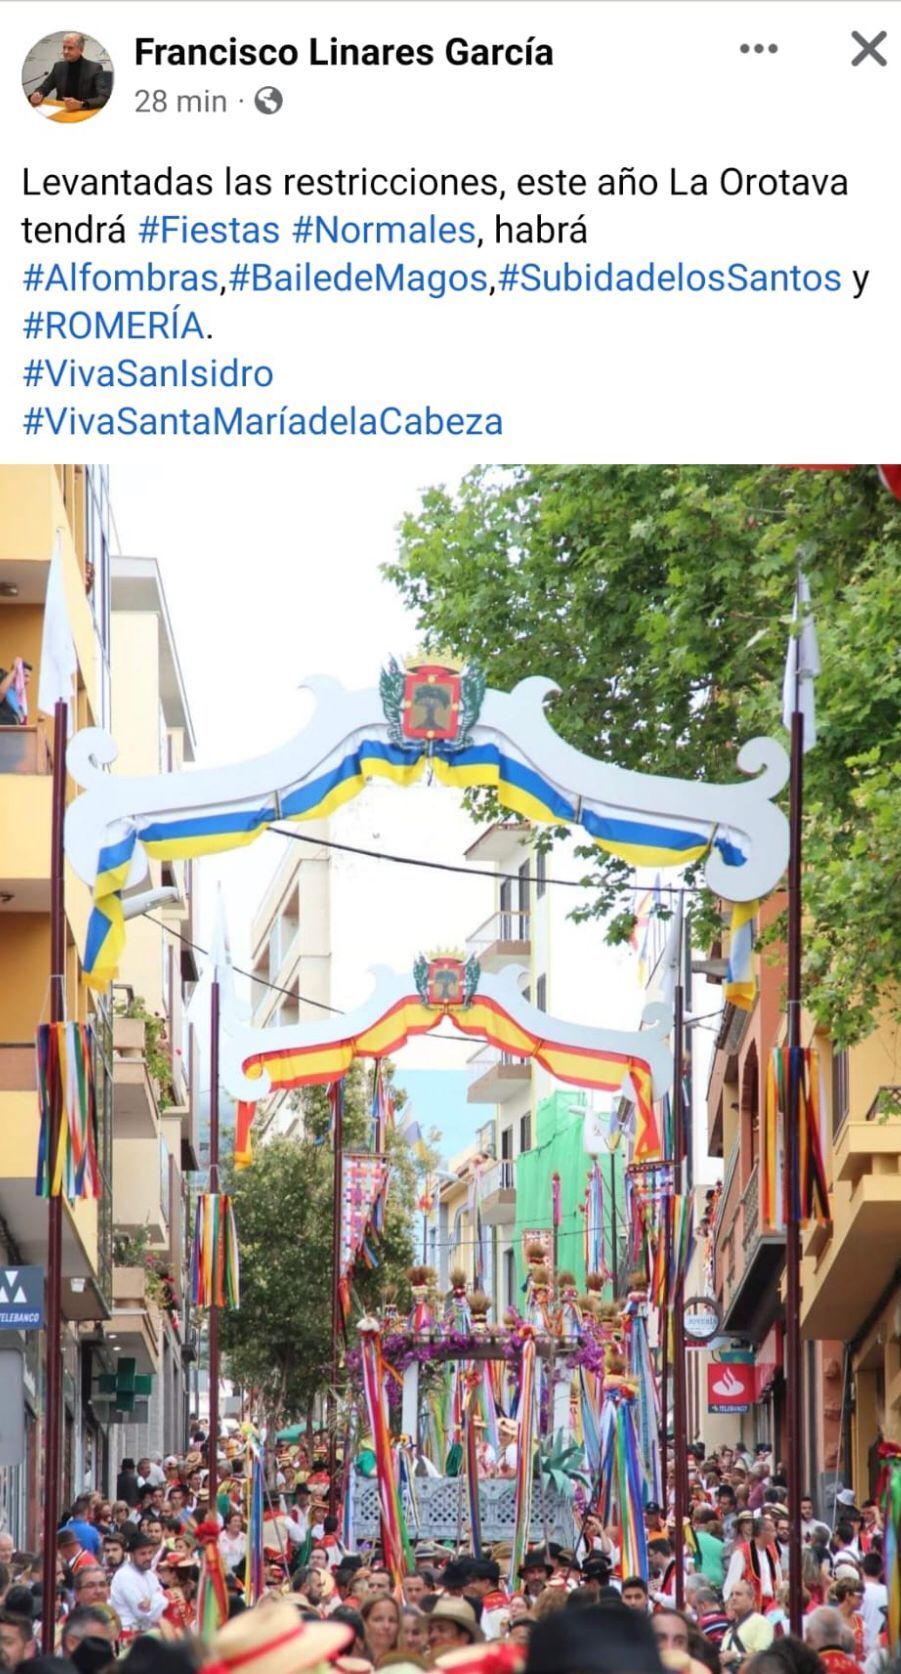 Anuncio de Francisco Linares en Facebook sobre las fiestas de La orotava en junio de 2022